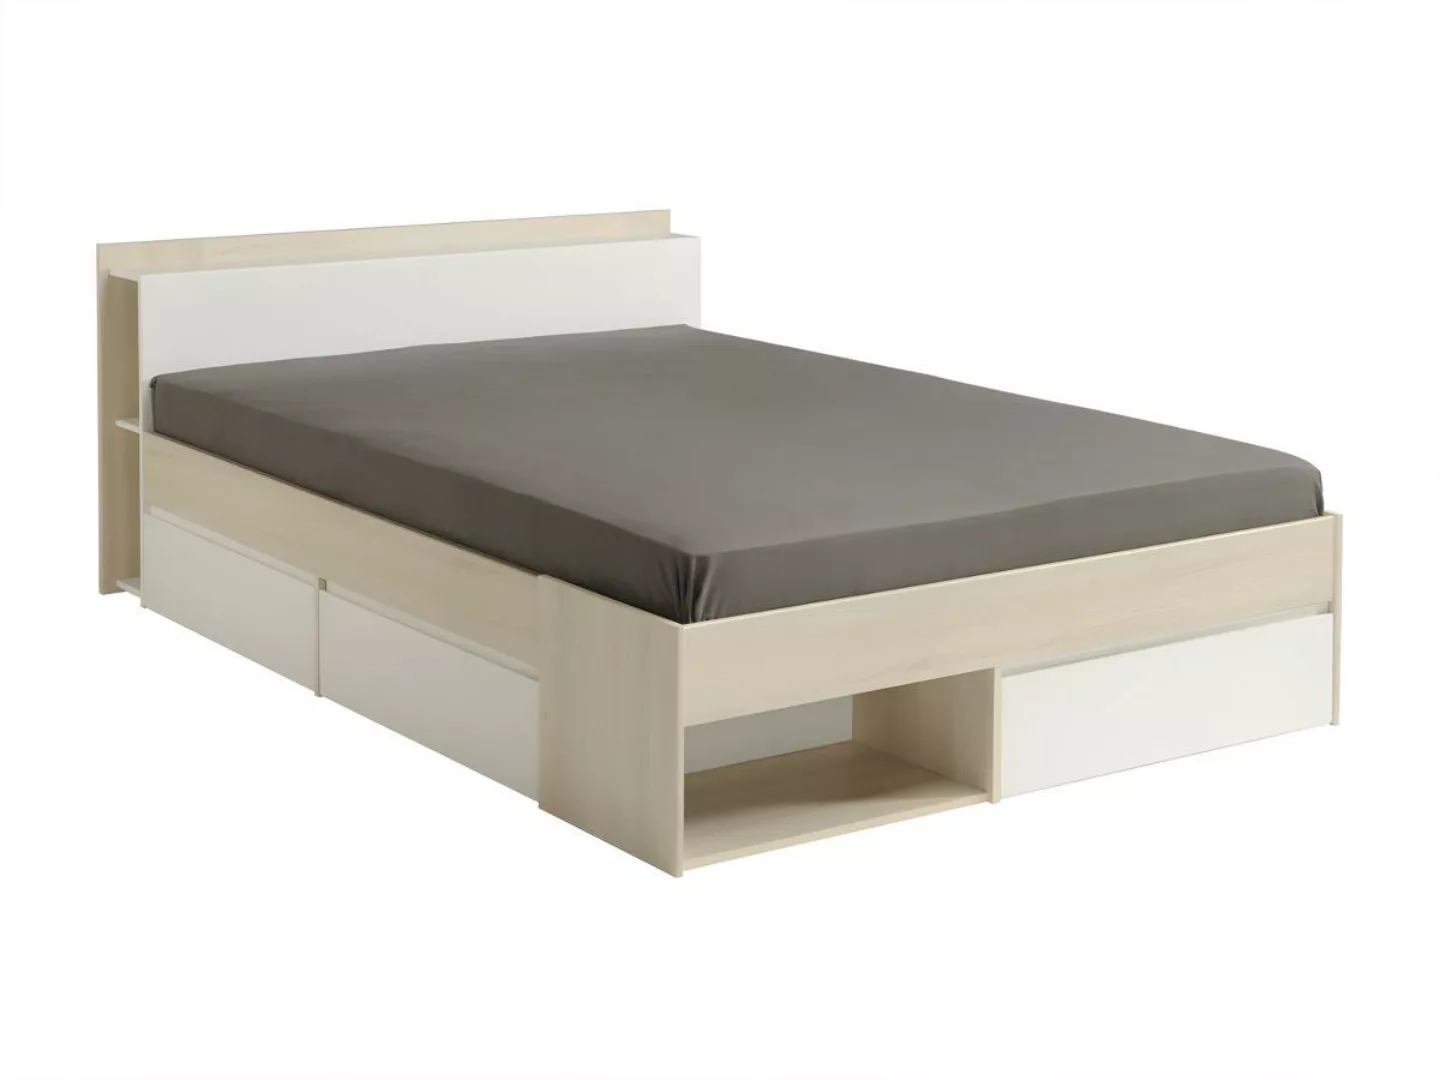 Bett mit Stauraum & Schubladen verstellbar - 140 x 190 cm bis 200 cm - Natu günstig online kaufen